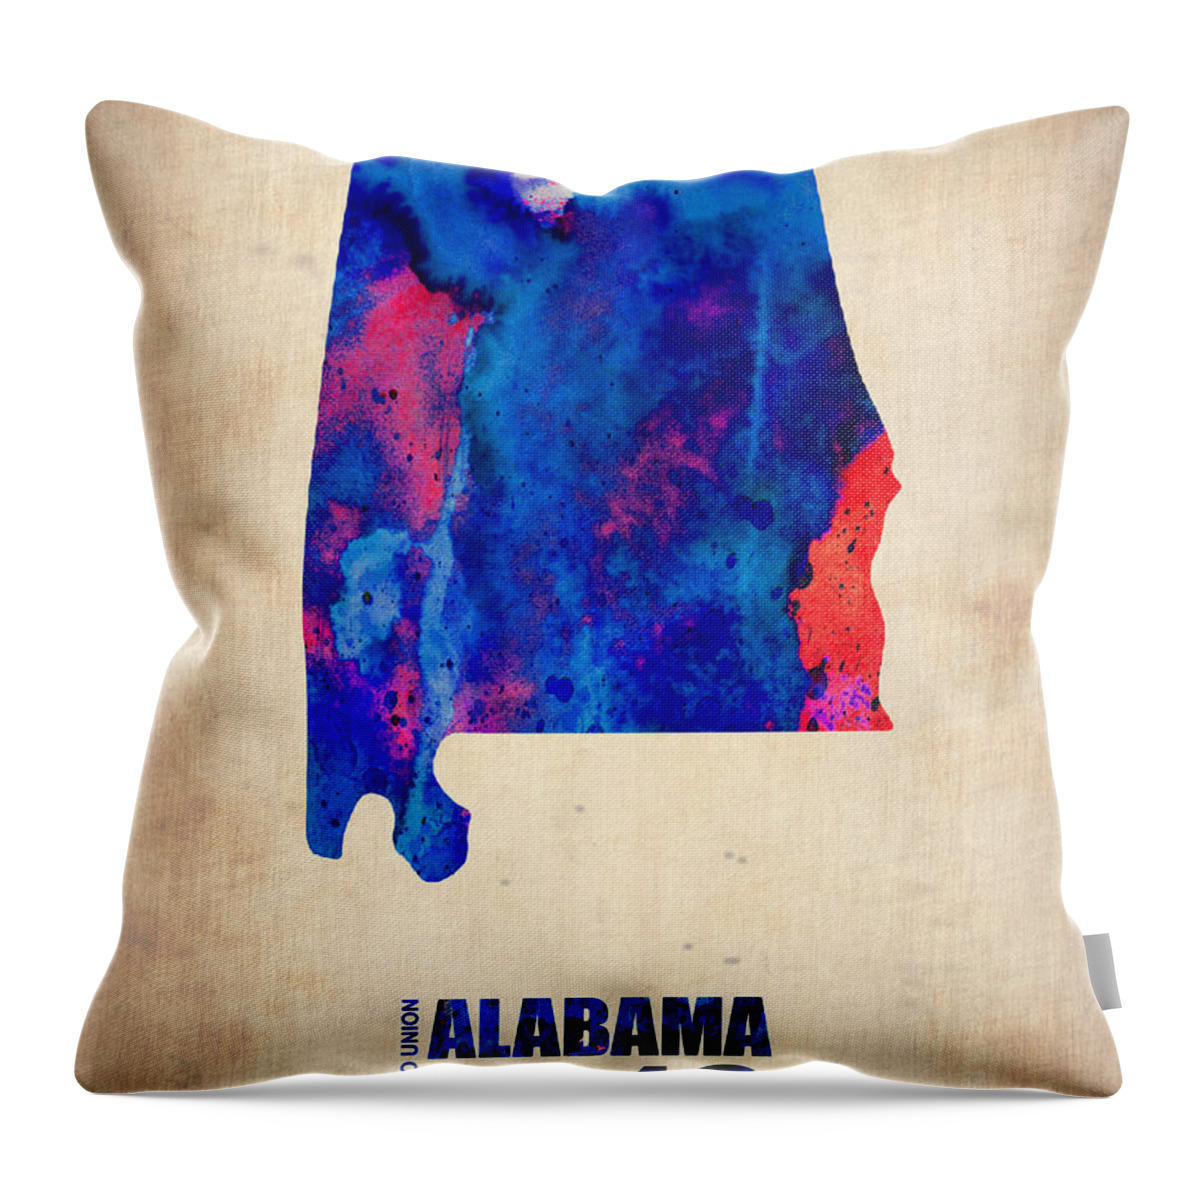 Alabama Throw Pillow featuring the digital art Alabama Watercolor Map by Naxart Studio